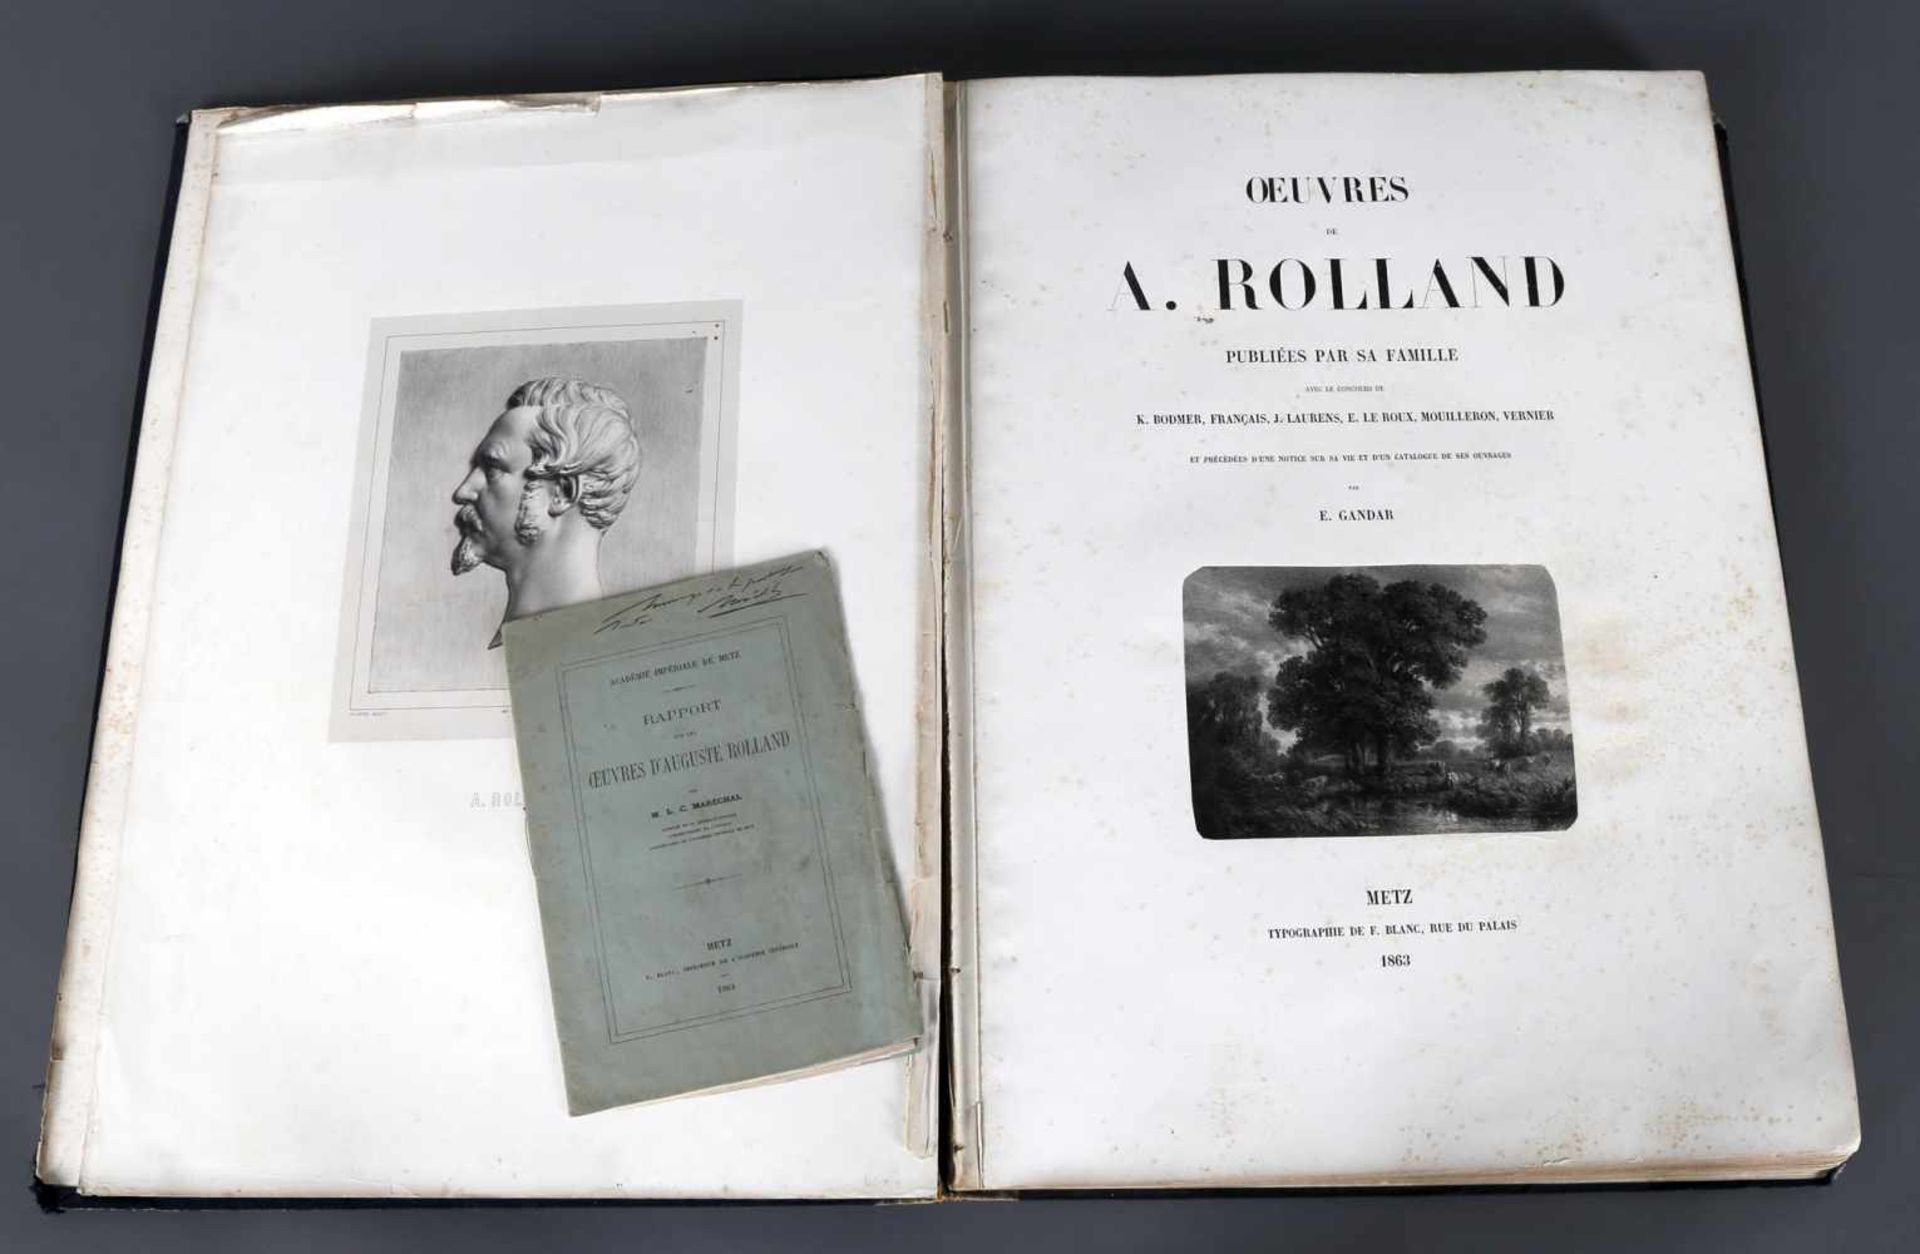 A. Rolland, Buch mit Lithographien seiner Werke, 1863, Metz"Oeuvres" de A. Rolland, publiées par